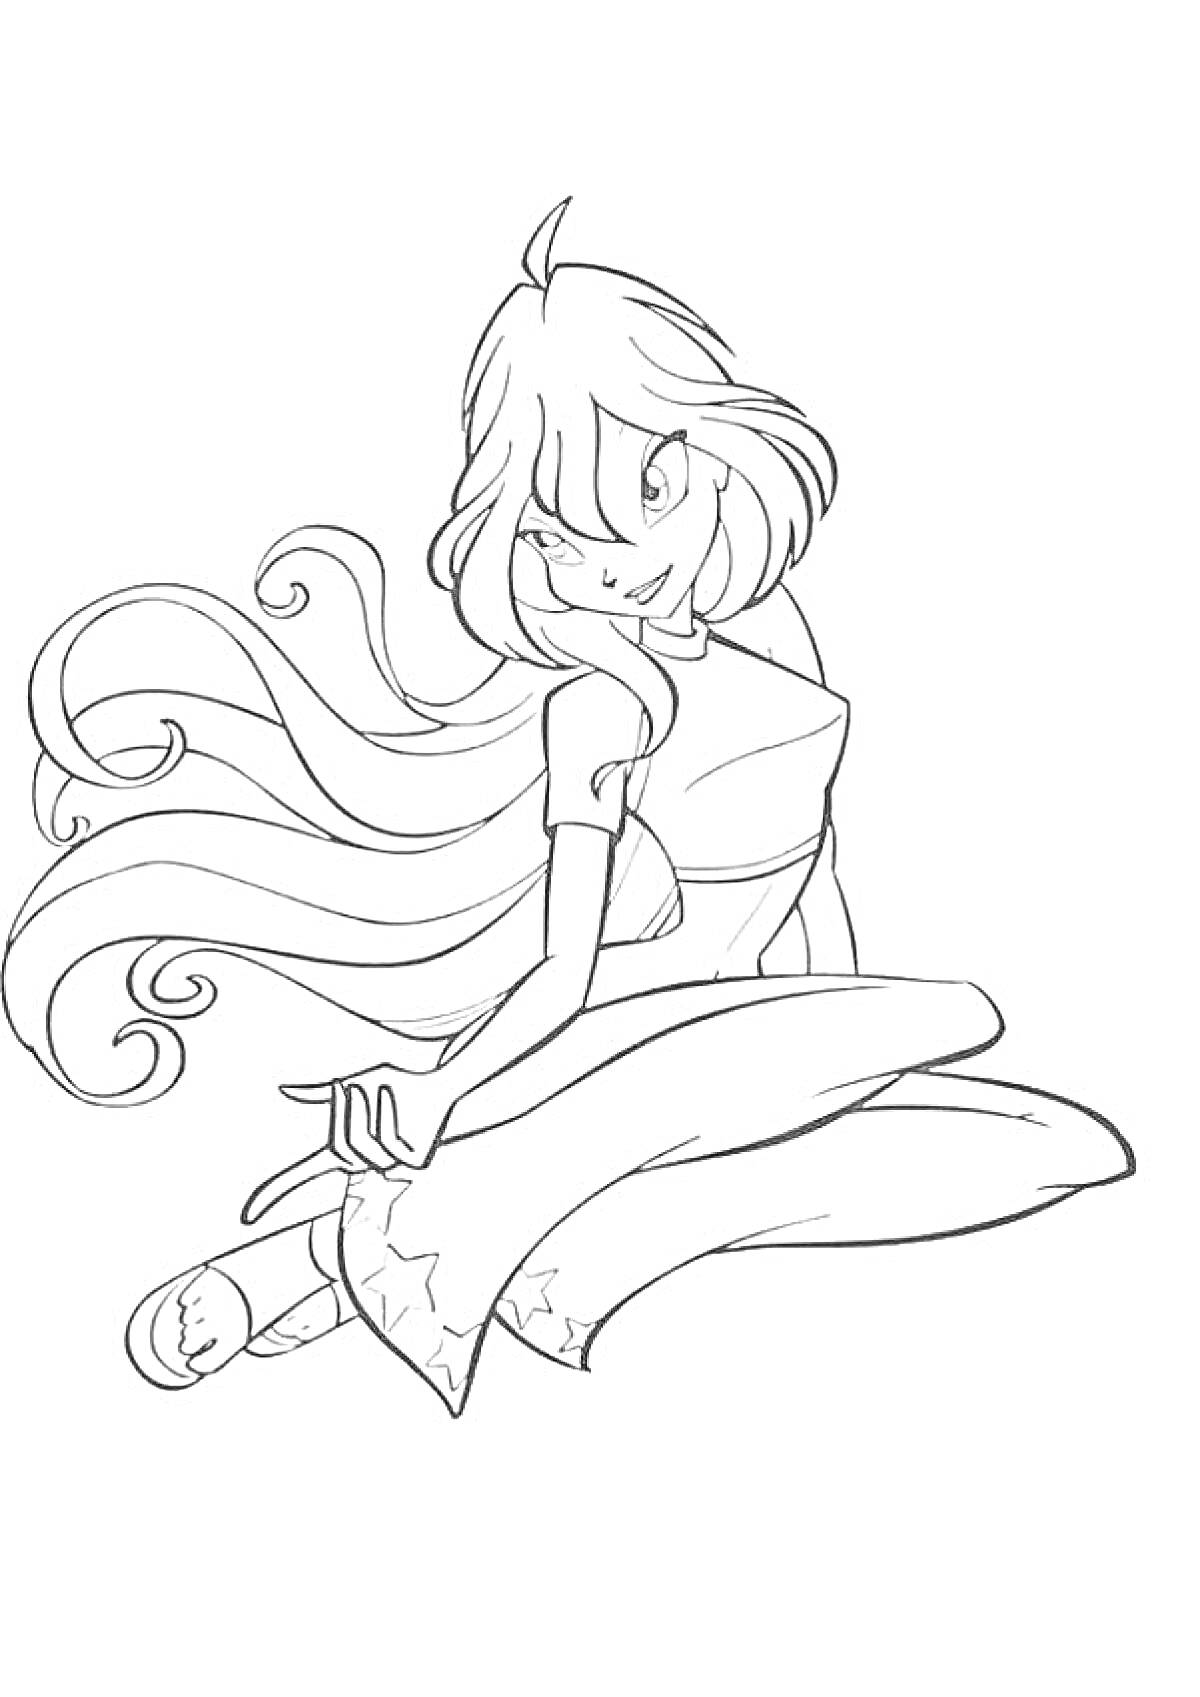 Раскраска Винкс Блум в платье с длинными волосами, сидящая на коленях с вытянутой ногой